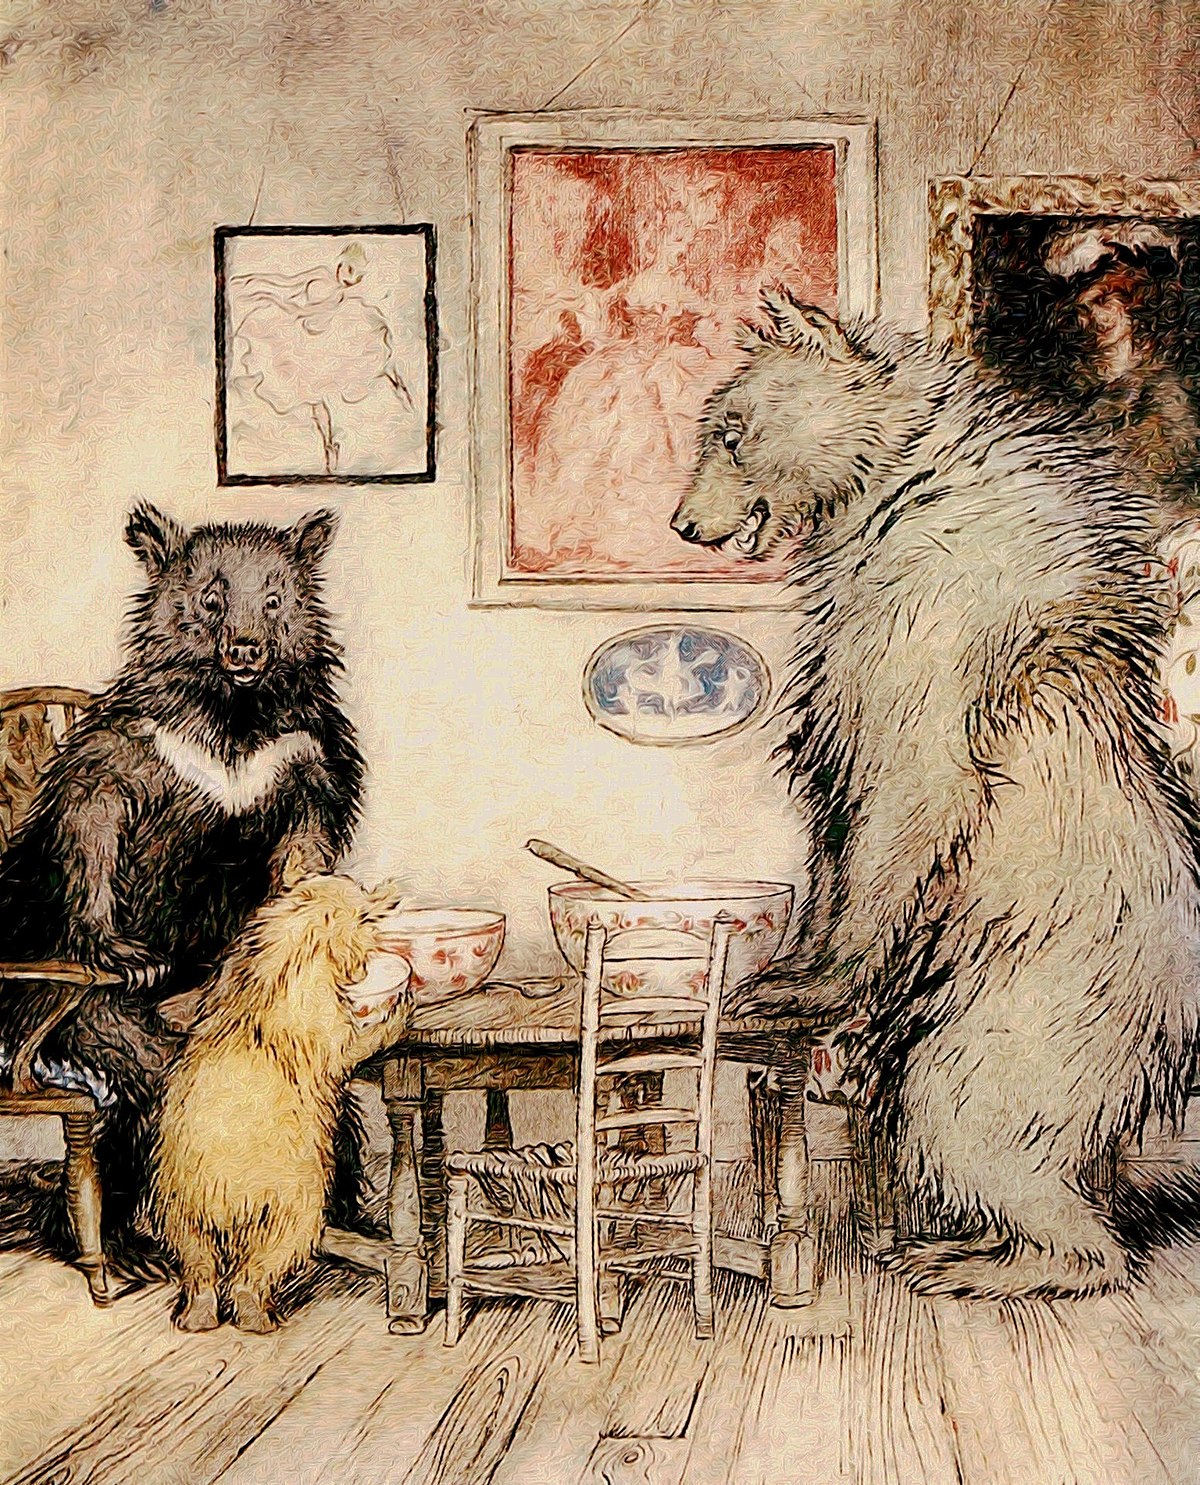 The Three Bears - Project Gutenberg eText 17034.jpg